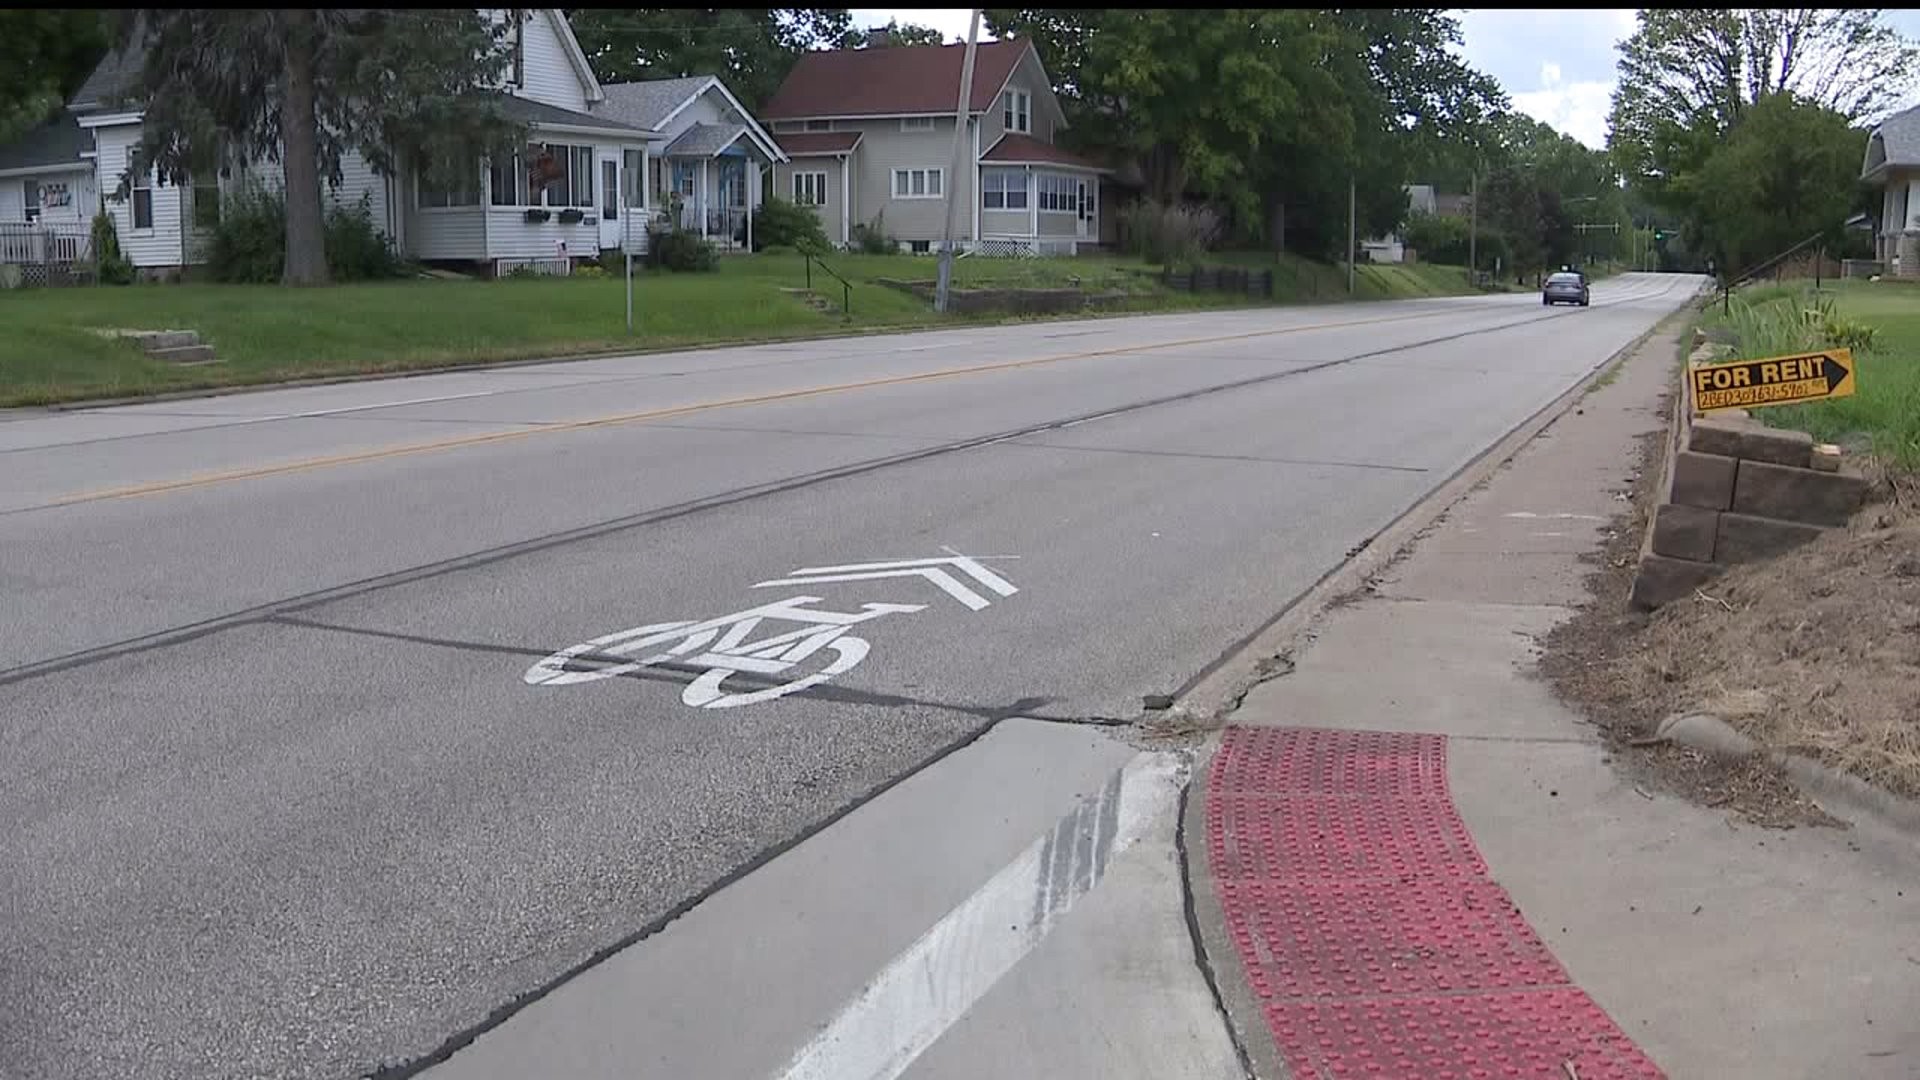 Bicycle lane markings pop up throughout Moline